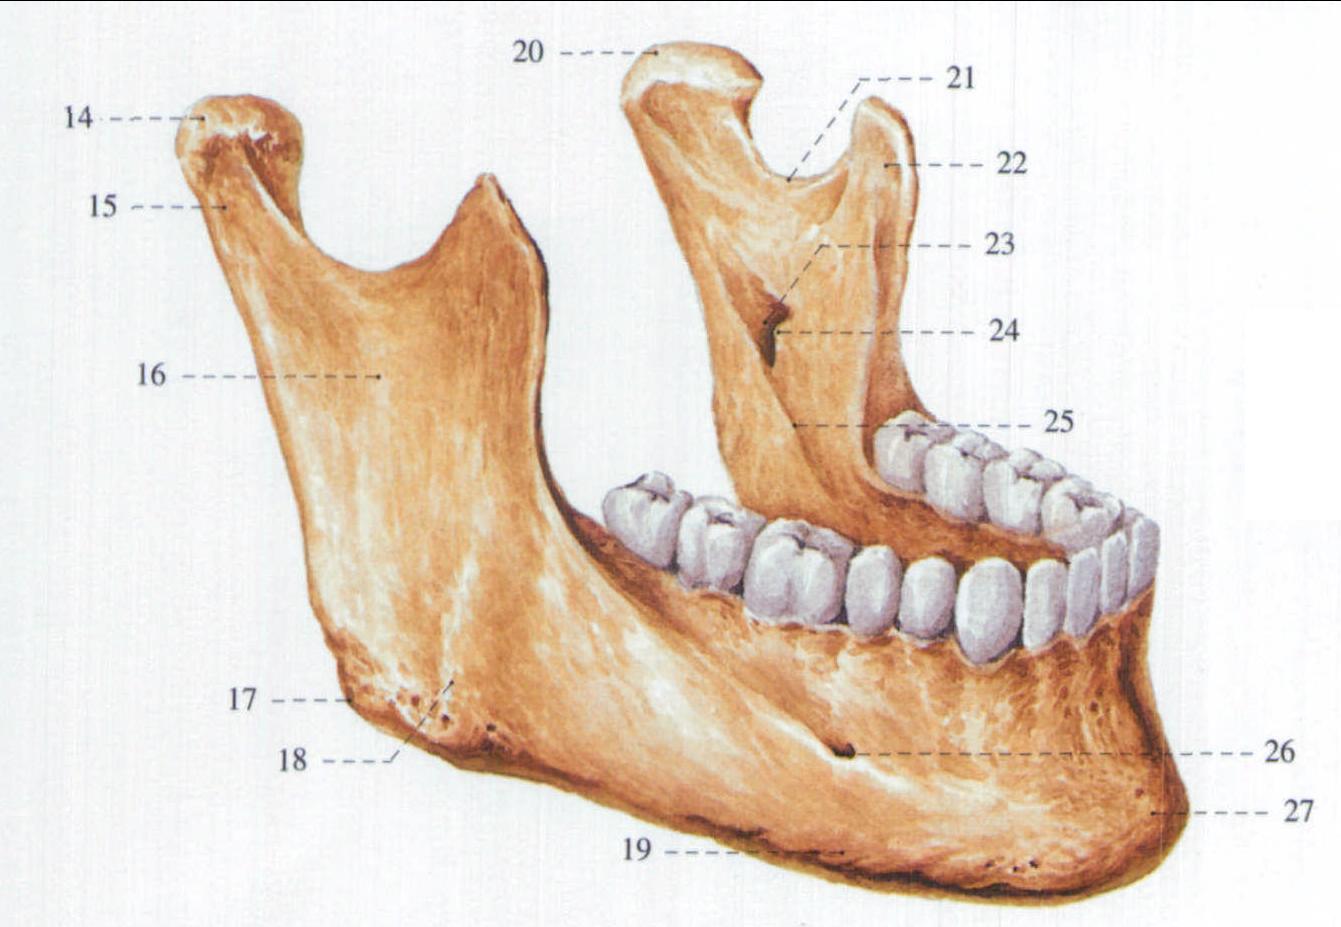 图1-53 下颌骨-临床解剖学-医学